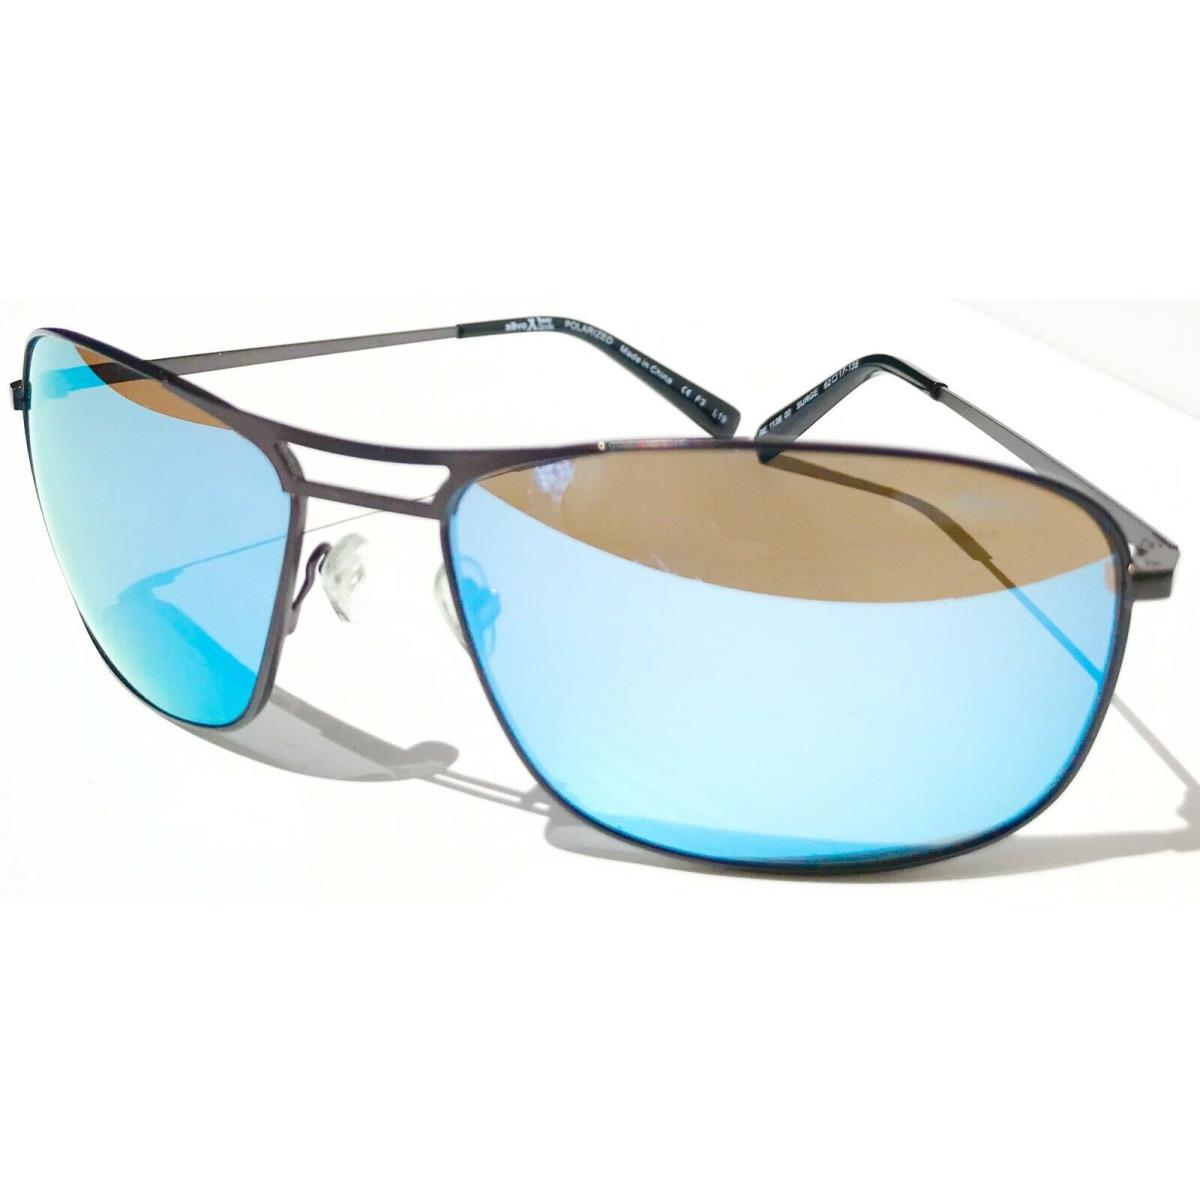 Revo sunglasses Surge - Gray Frame, Blue Lens